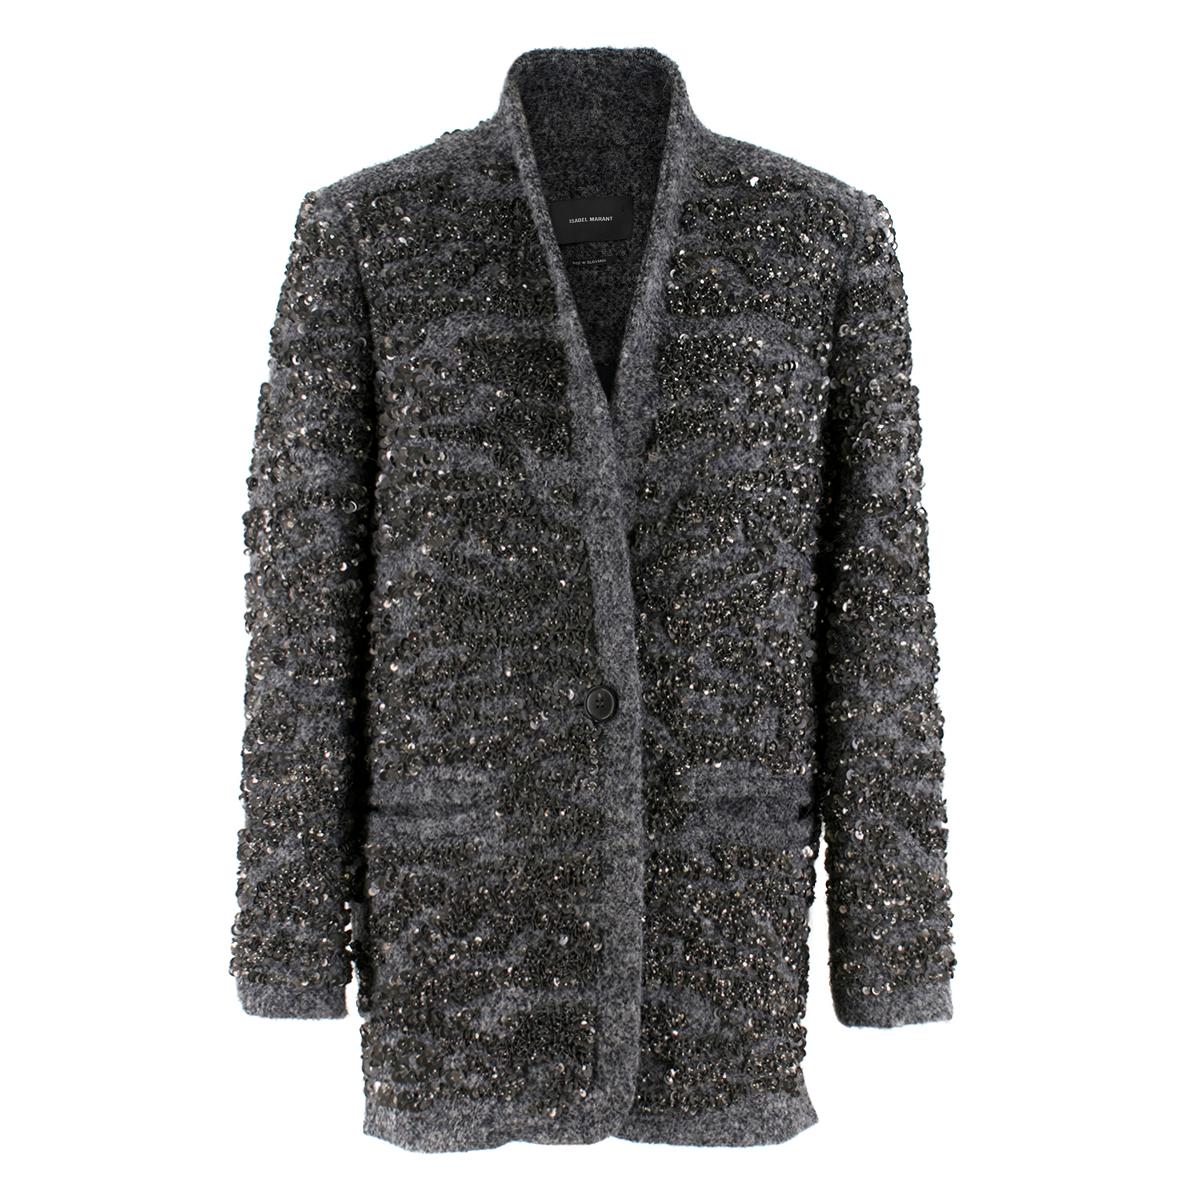 Isabel Marant Gunmetal Sequin Wool Blend Jacket Size FR 36